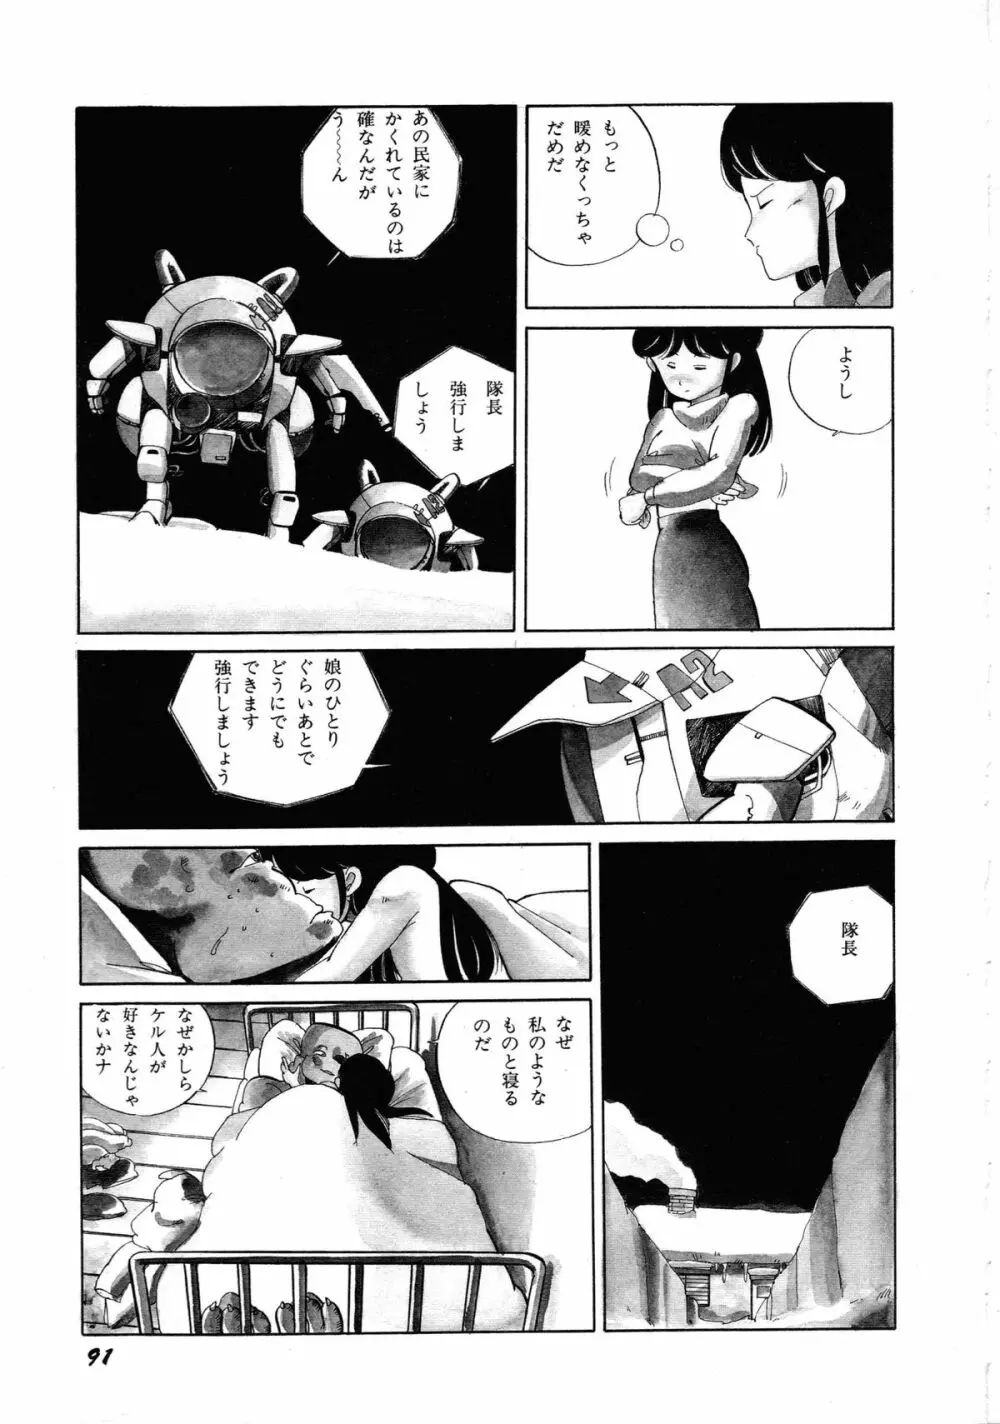 ロボット&美少女傑作選 レモン・ピープル1982-1986 95ページ